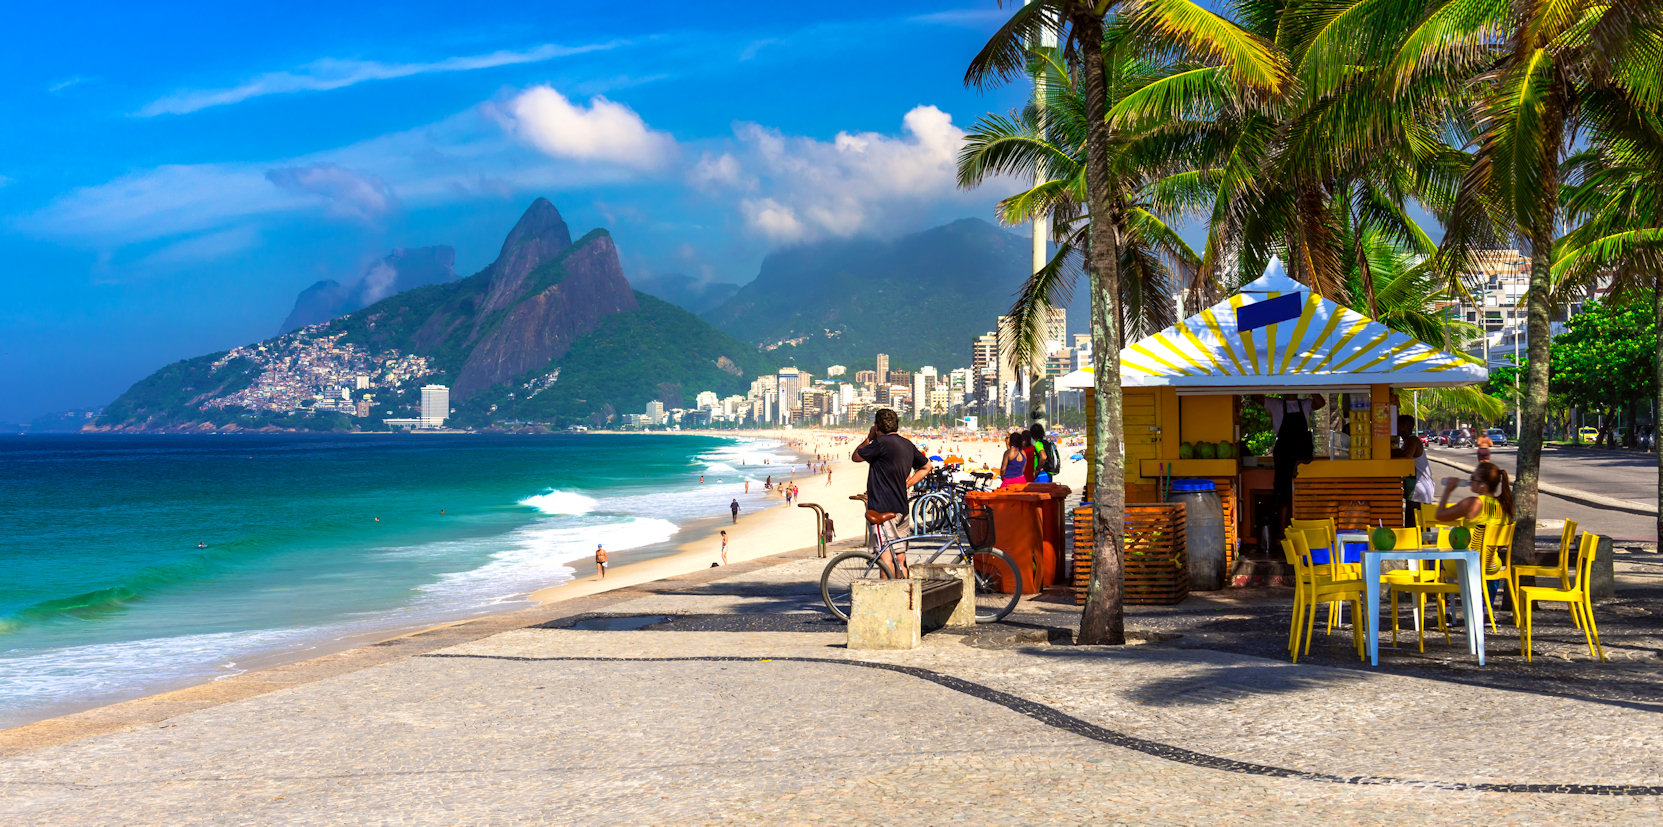 Ipanema beach in Rio de Janeiro, Brazil. 